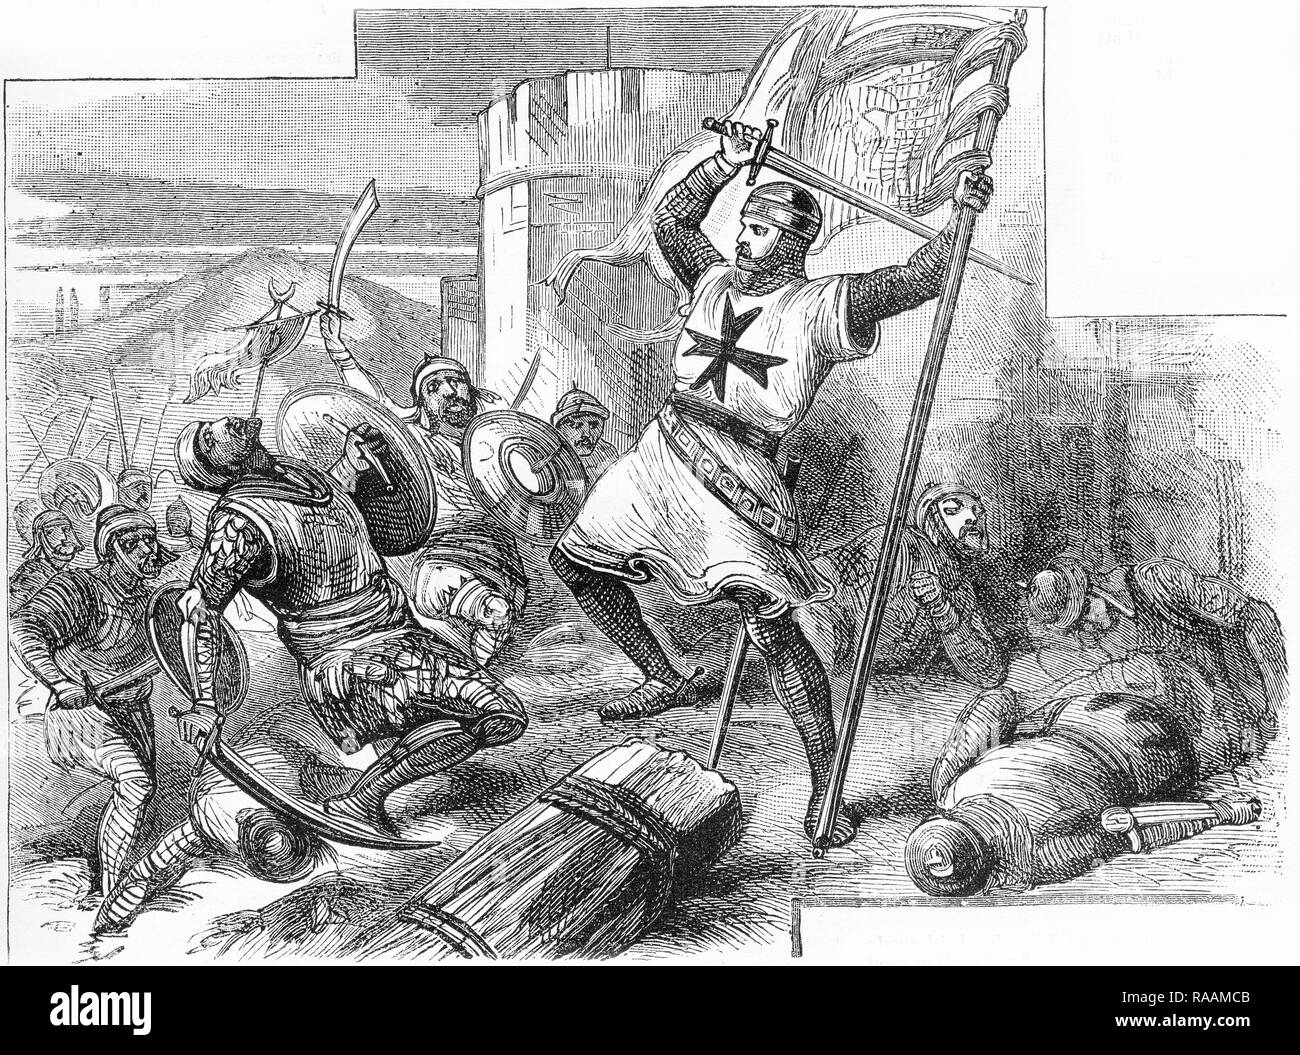 Gravure d'un chevalier luttant contre les musulmans au cours d'une des croisades. À partir d'une gravure originale dans les garçons de England Magazine 1894. Banque D'Images